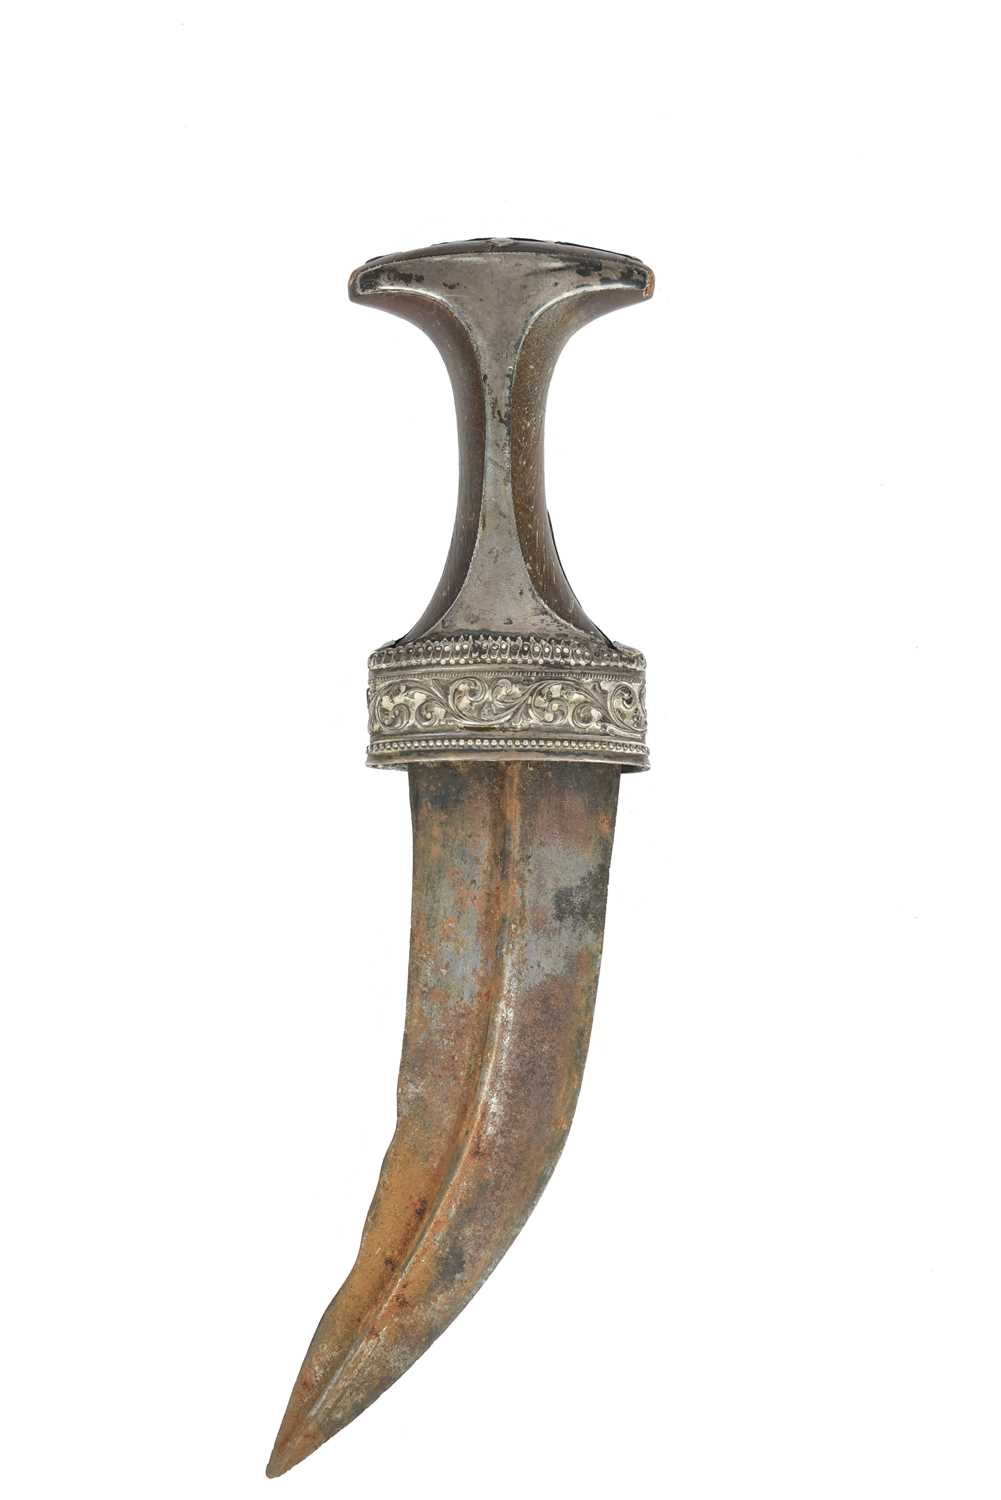 λ An Omani dagger (jambiya), broad curved blade 6.5 in. rhinoceros horn hilt with embossed silver - Image 3 of 3